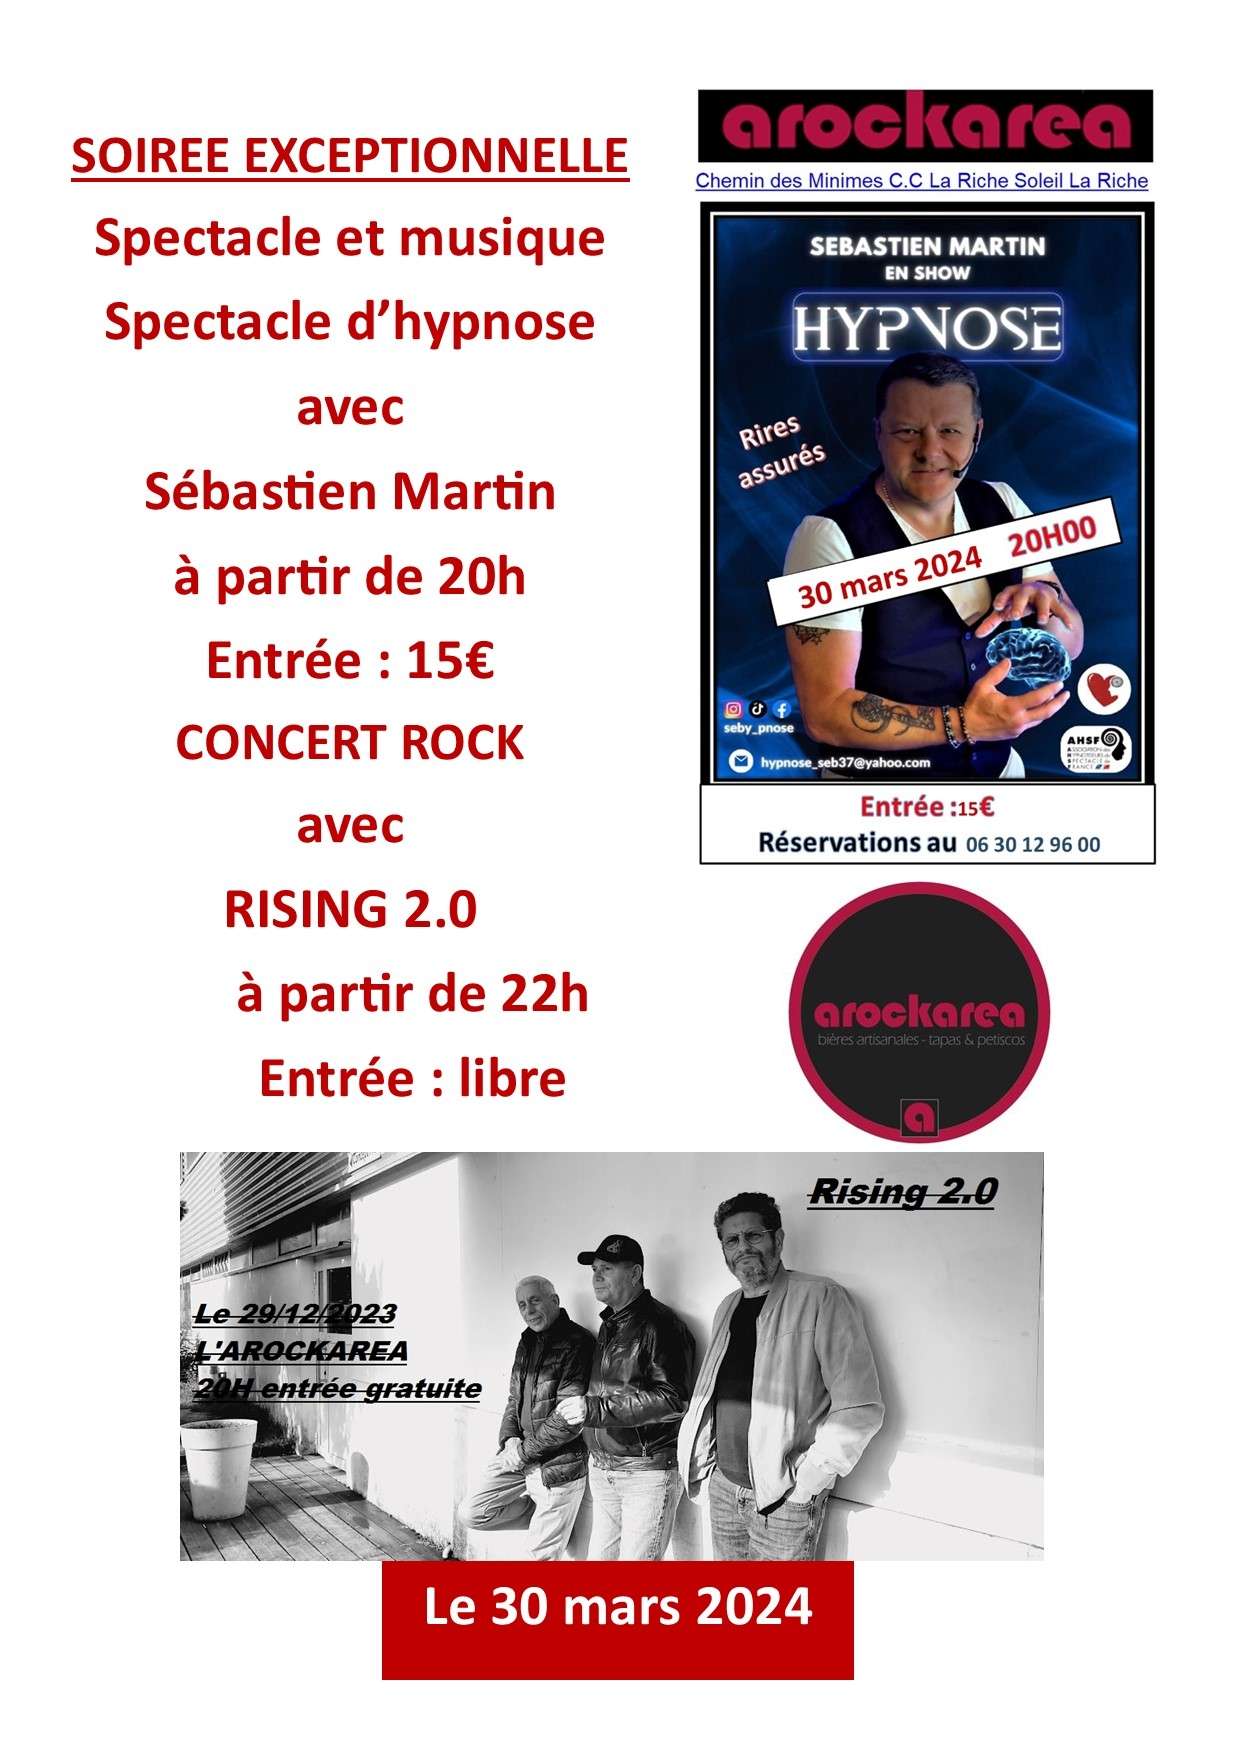 Spectacle d'hypnose avec Sébastien Martin et Concert de RISING 2.0